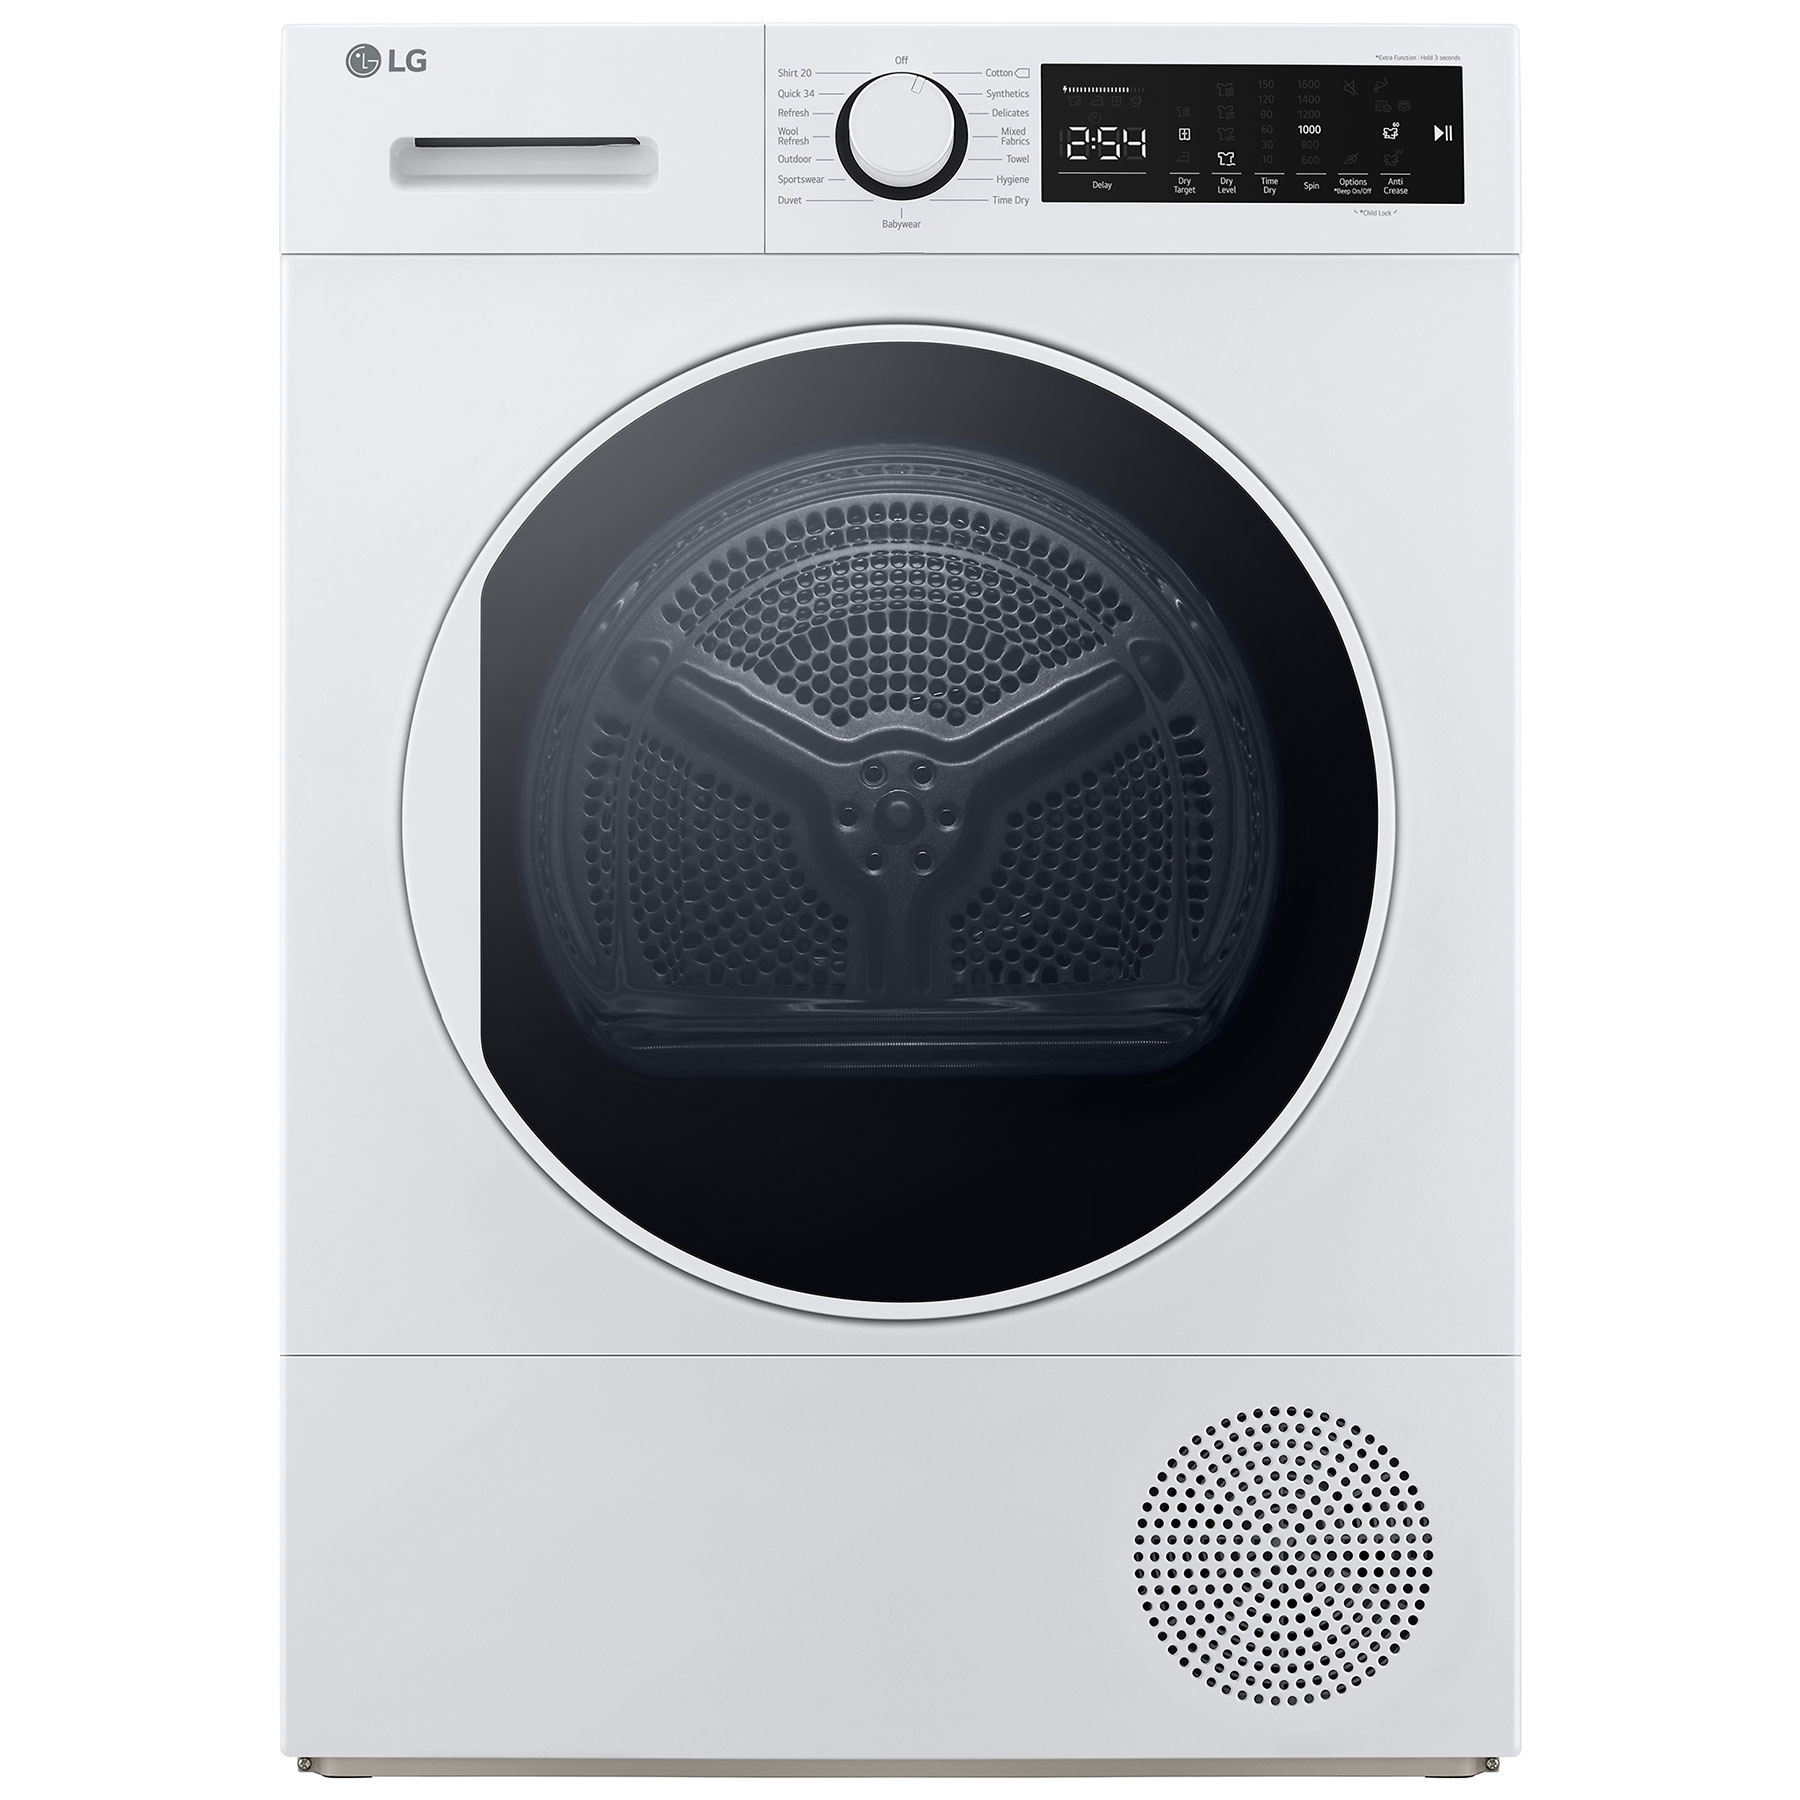 Image of LG FDT208W 8kg Heat Pump Condenser Dryer in White A